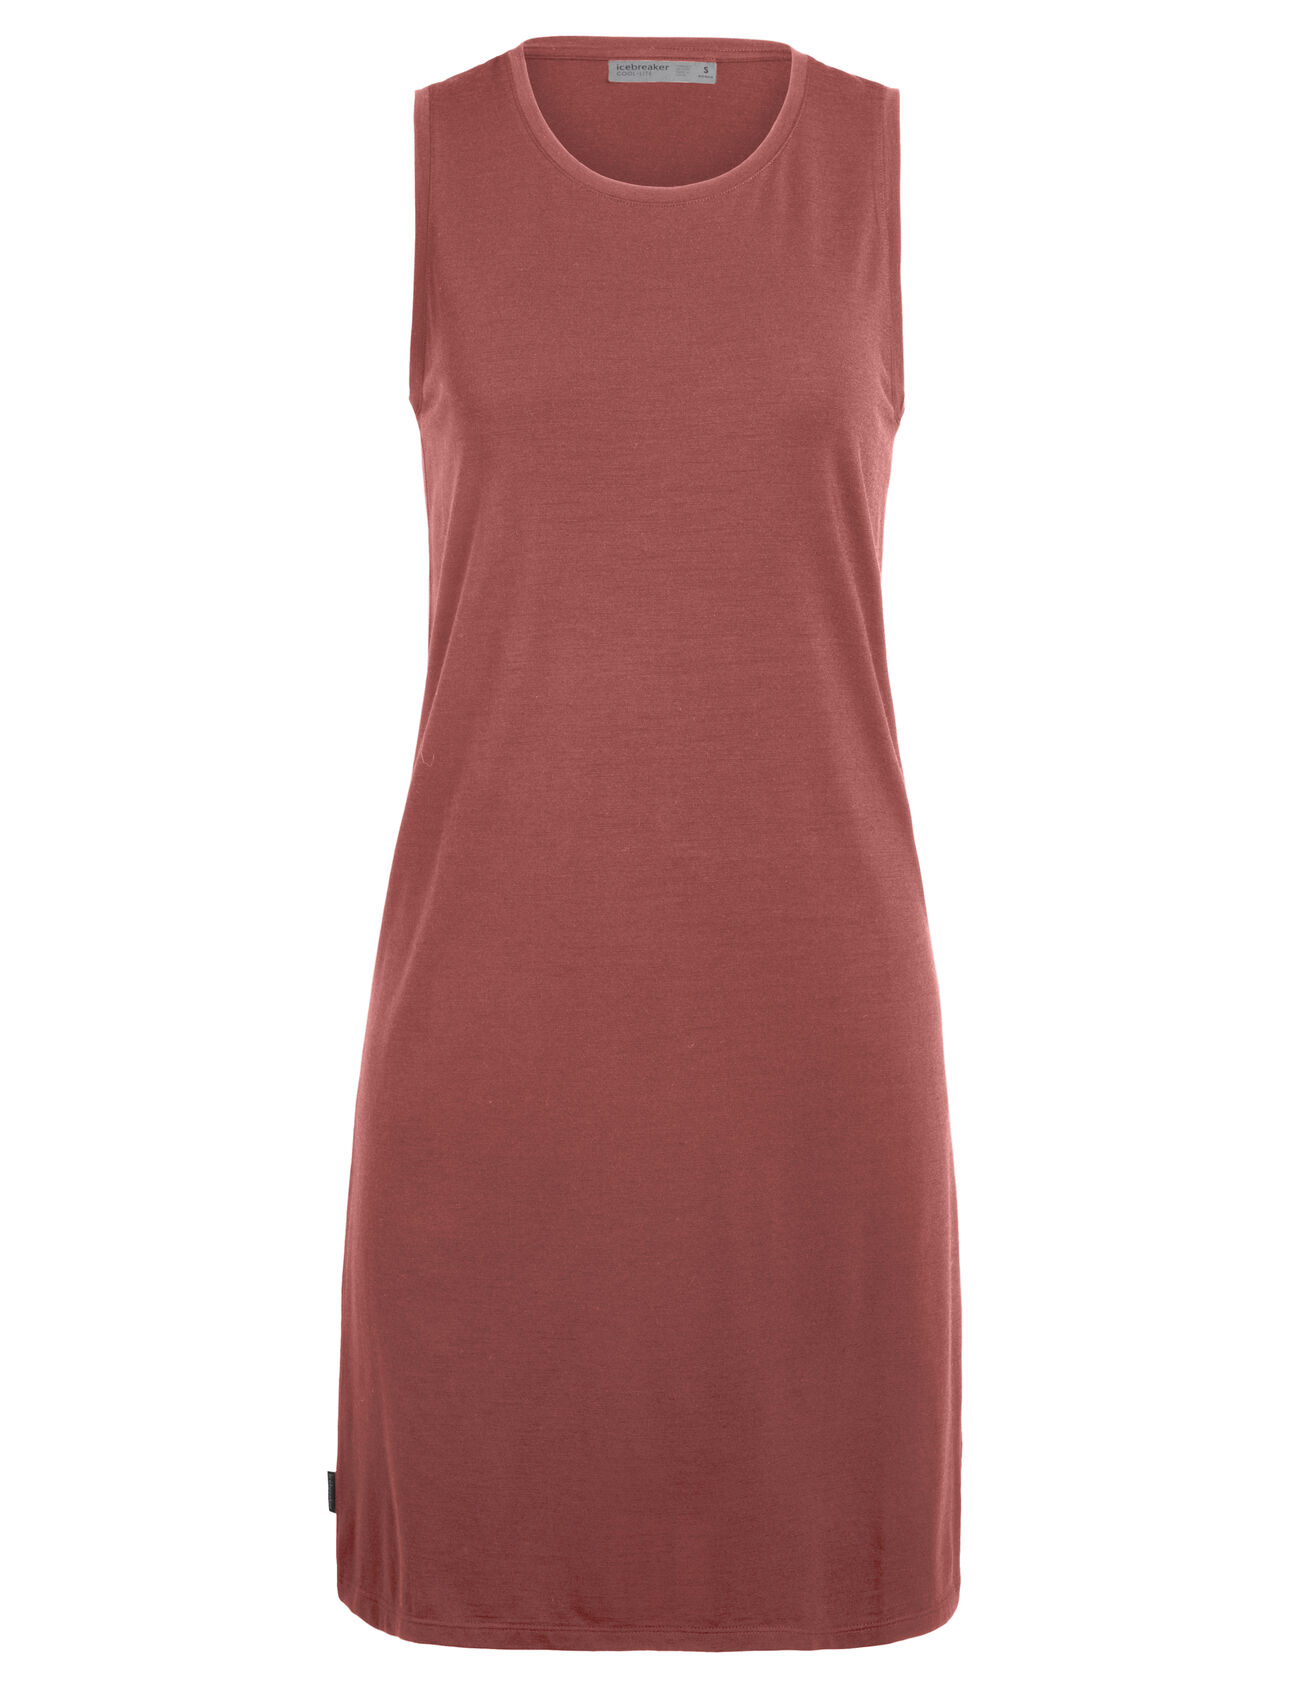 Cool-Lite™ Merino Yanni Sleeveless Dress